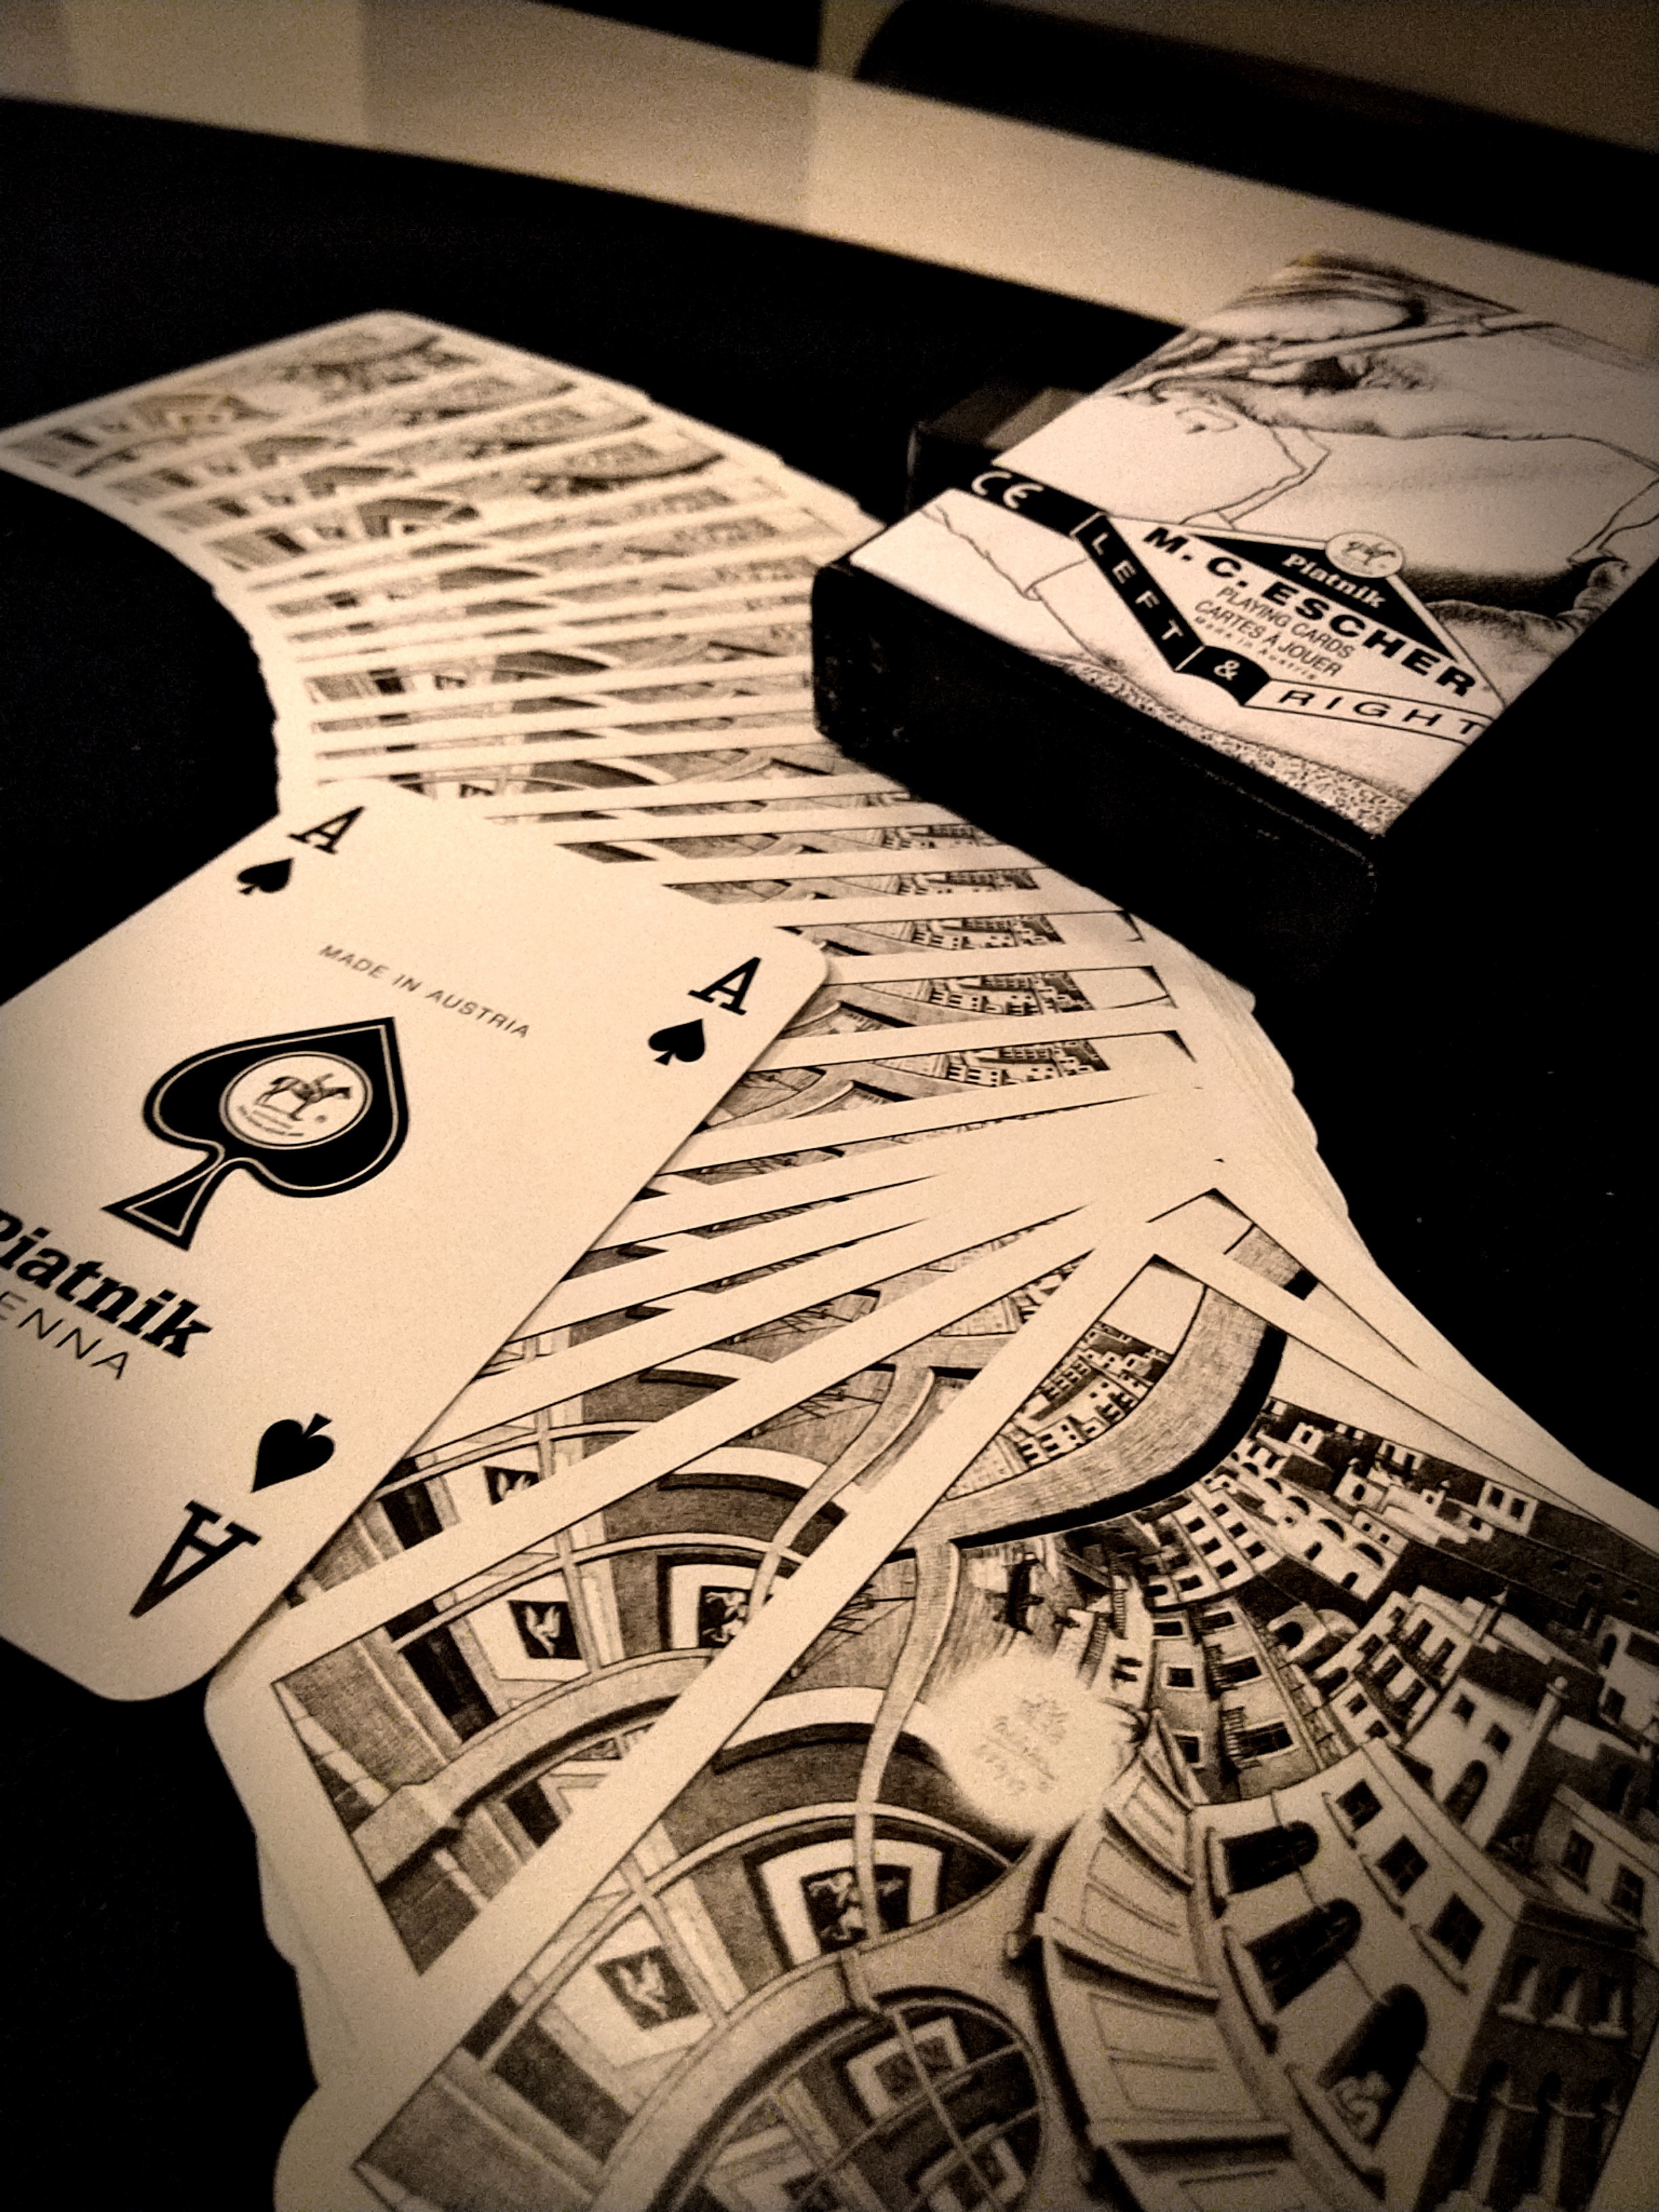 barmagicsuperlucky-cards-escher1.jpg